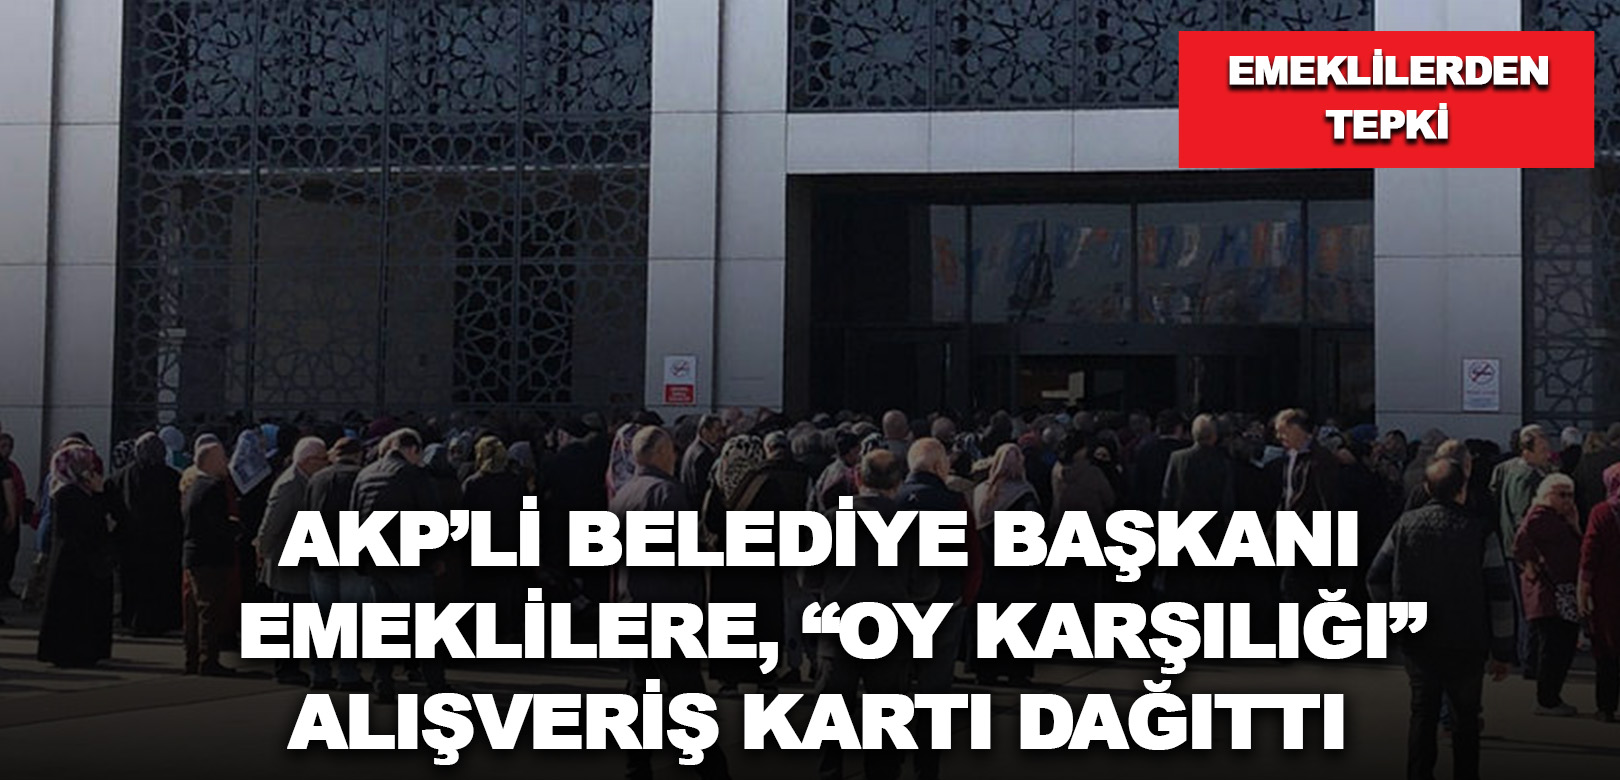 AKP’li belediye başkanı emeklilere, “Oy karşılığı” alışveriş kartı dağıttı: Emeklilerden tepki